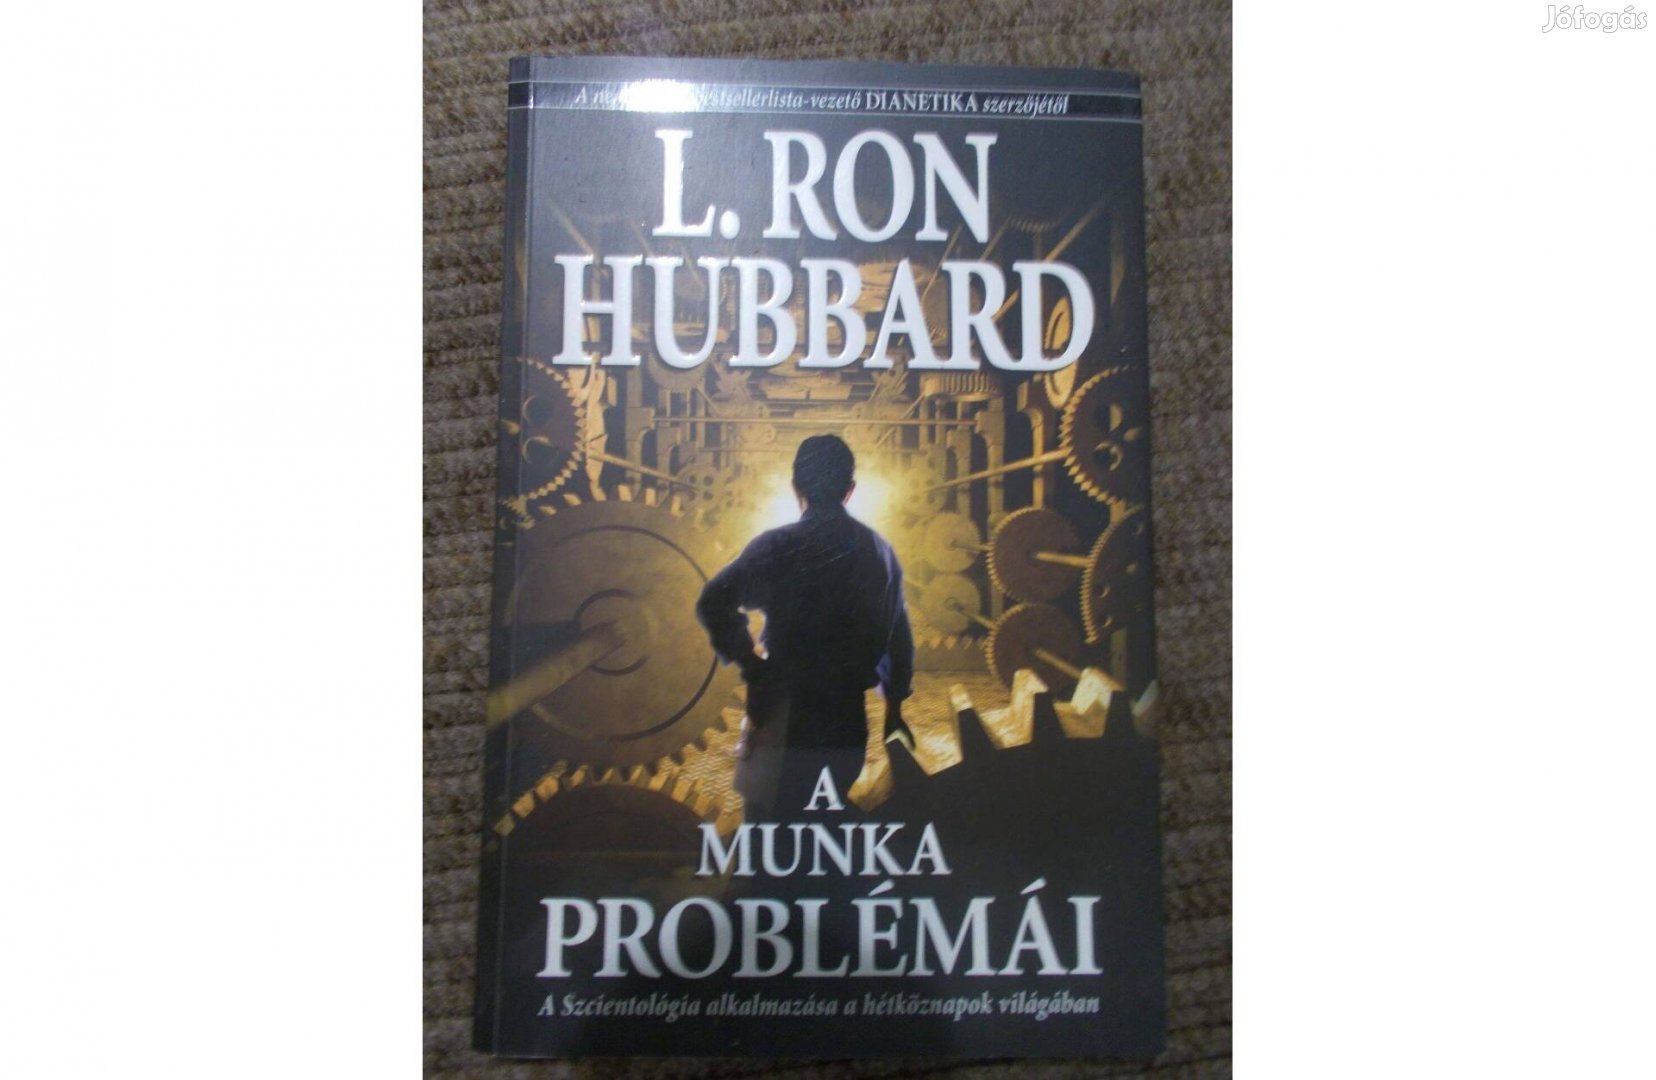 L.Ron Hubbard könyvei